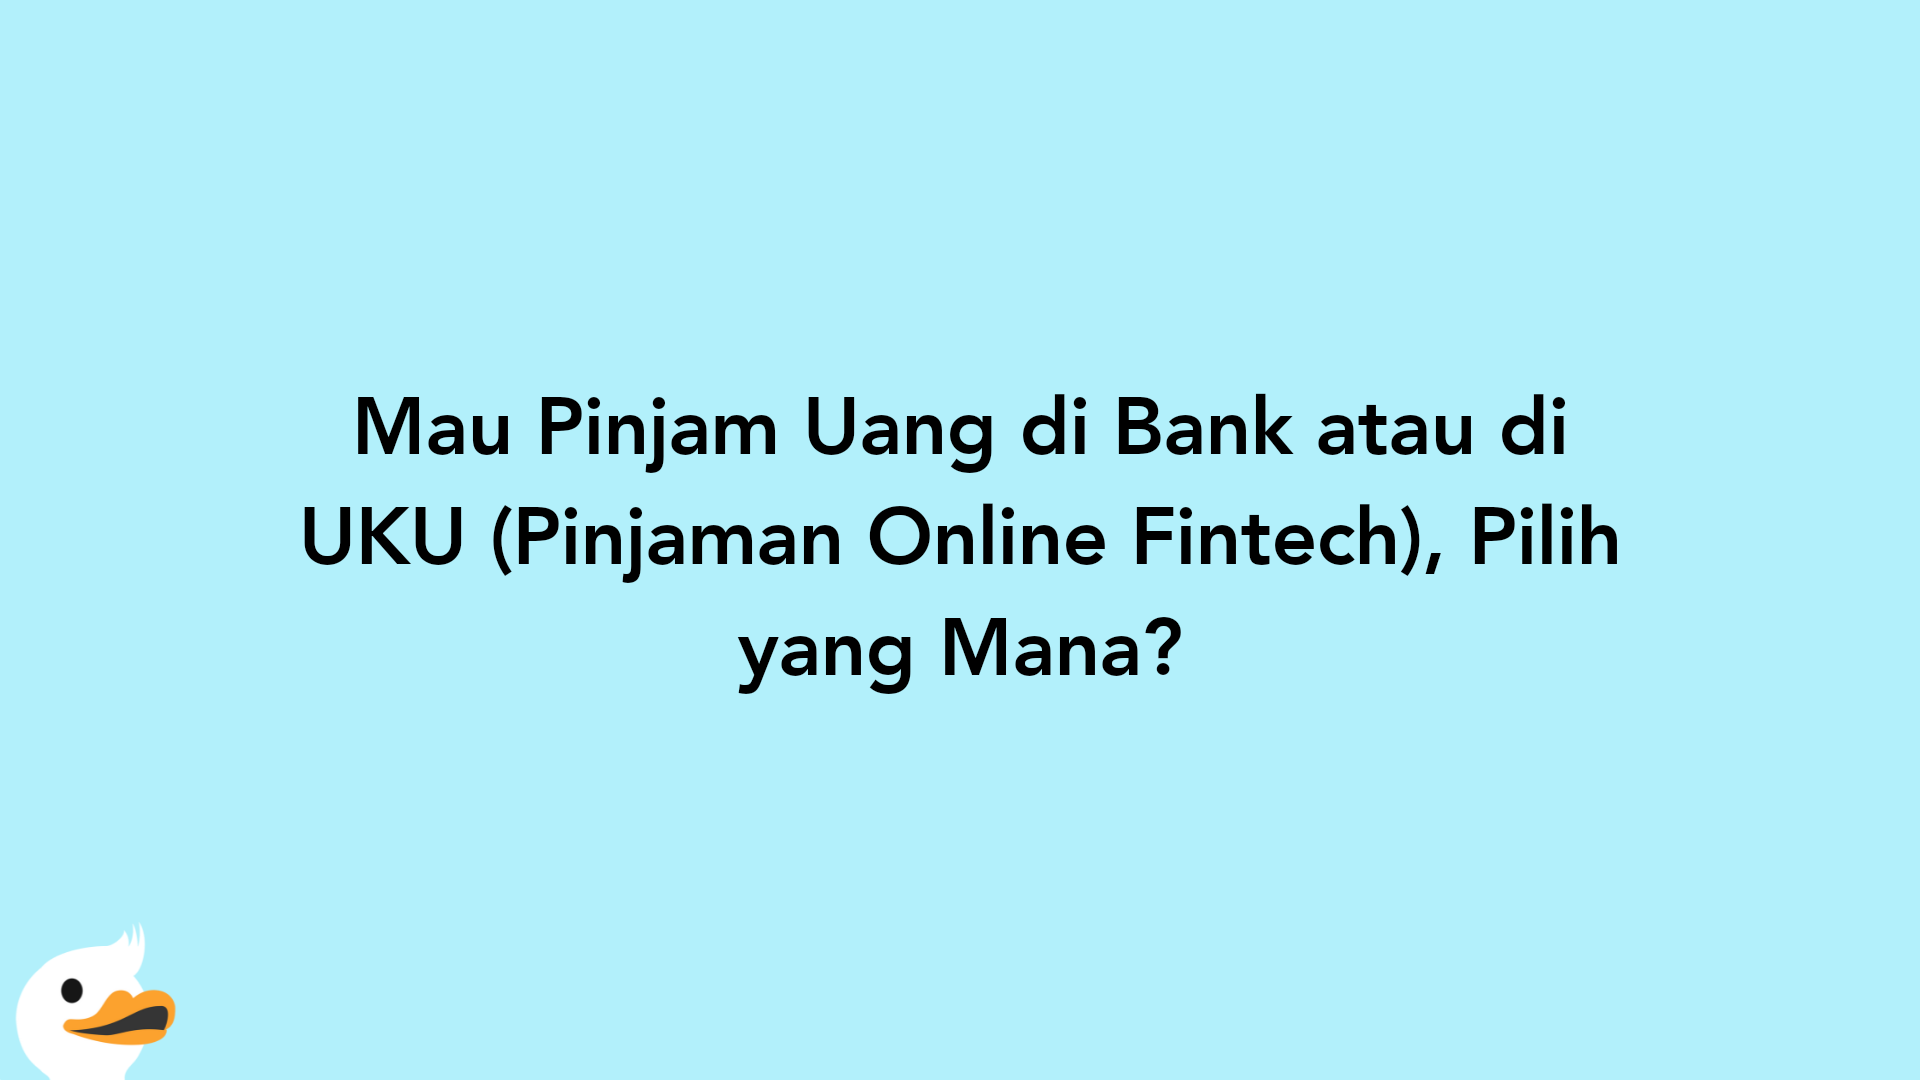 Mau Pinjam Uang di Bank atau di UKU (Pinjaman Online Fintech), Pilih yang Mana?